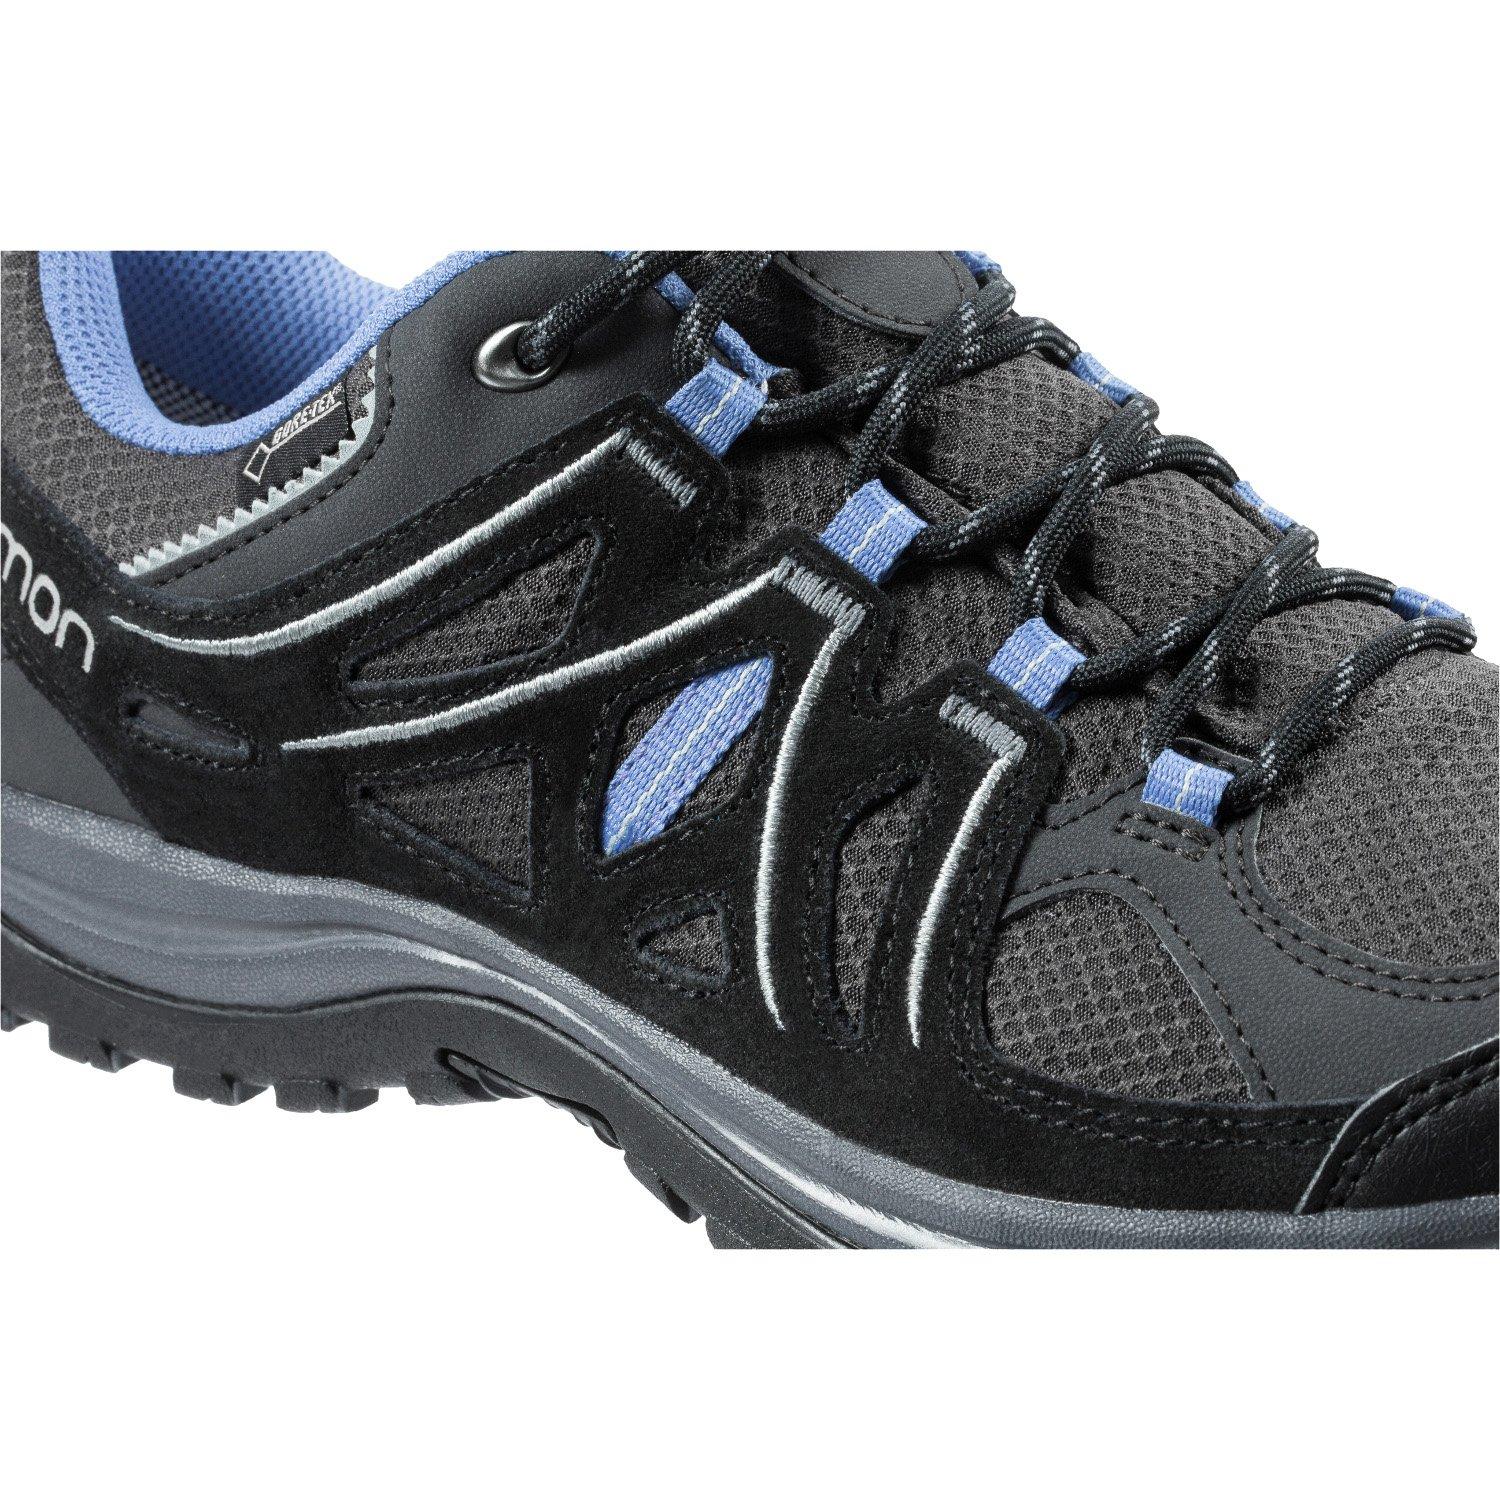 Women's Salomon 2 Gore-Tex Hiking Shoe Approach Shoe | Shoes | Tiso